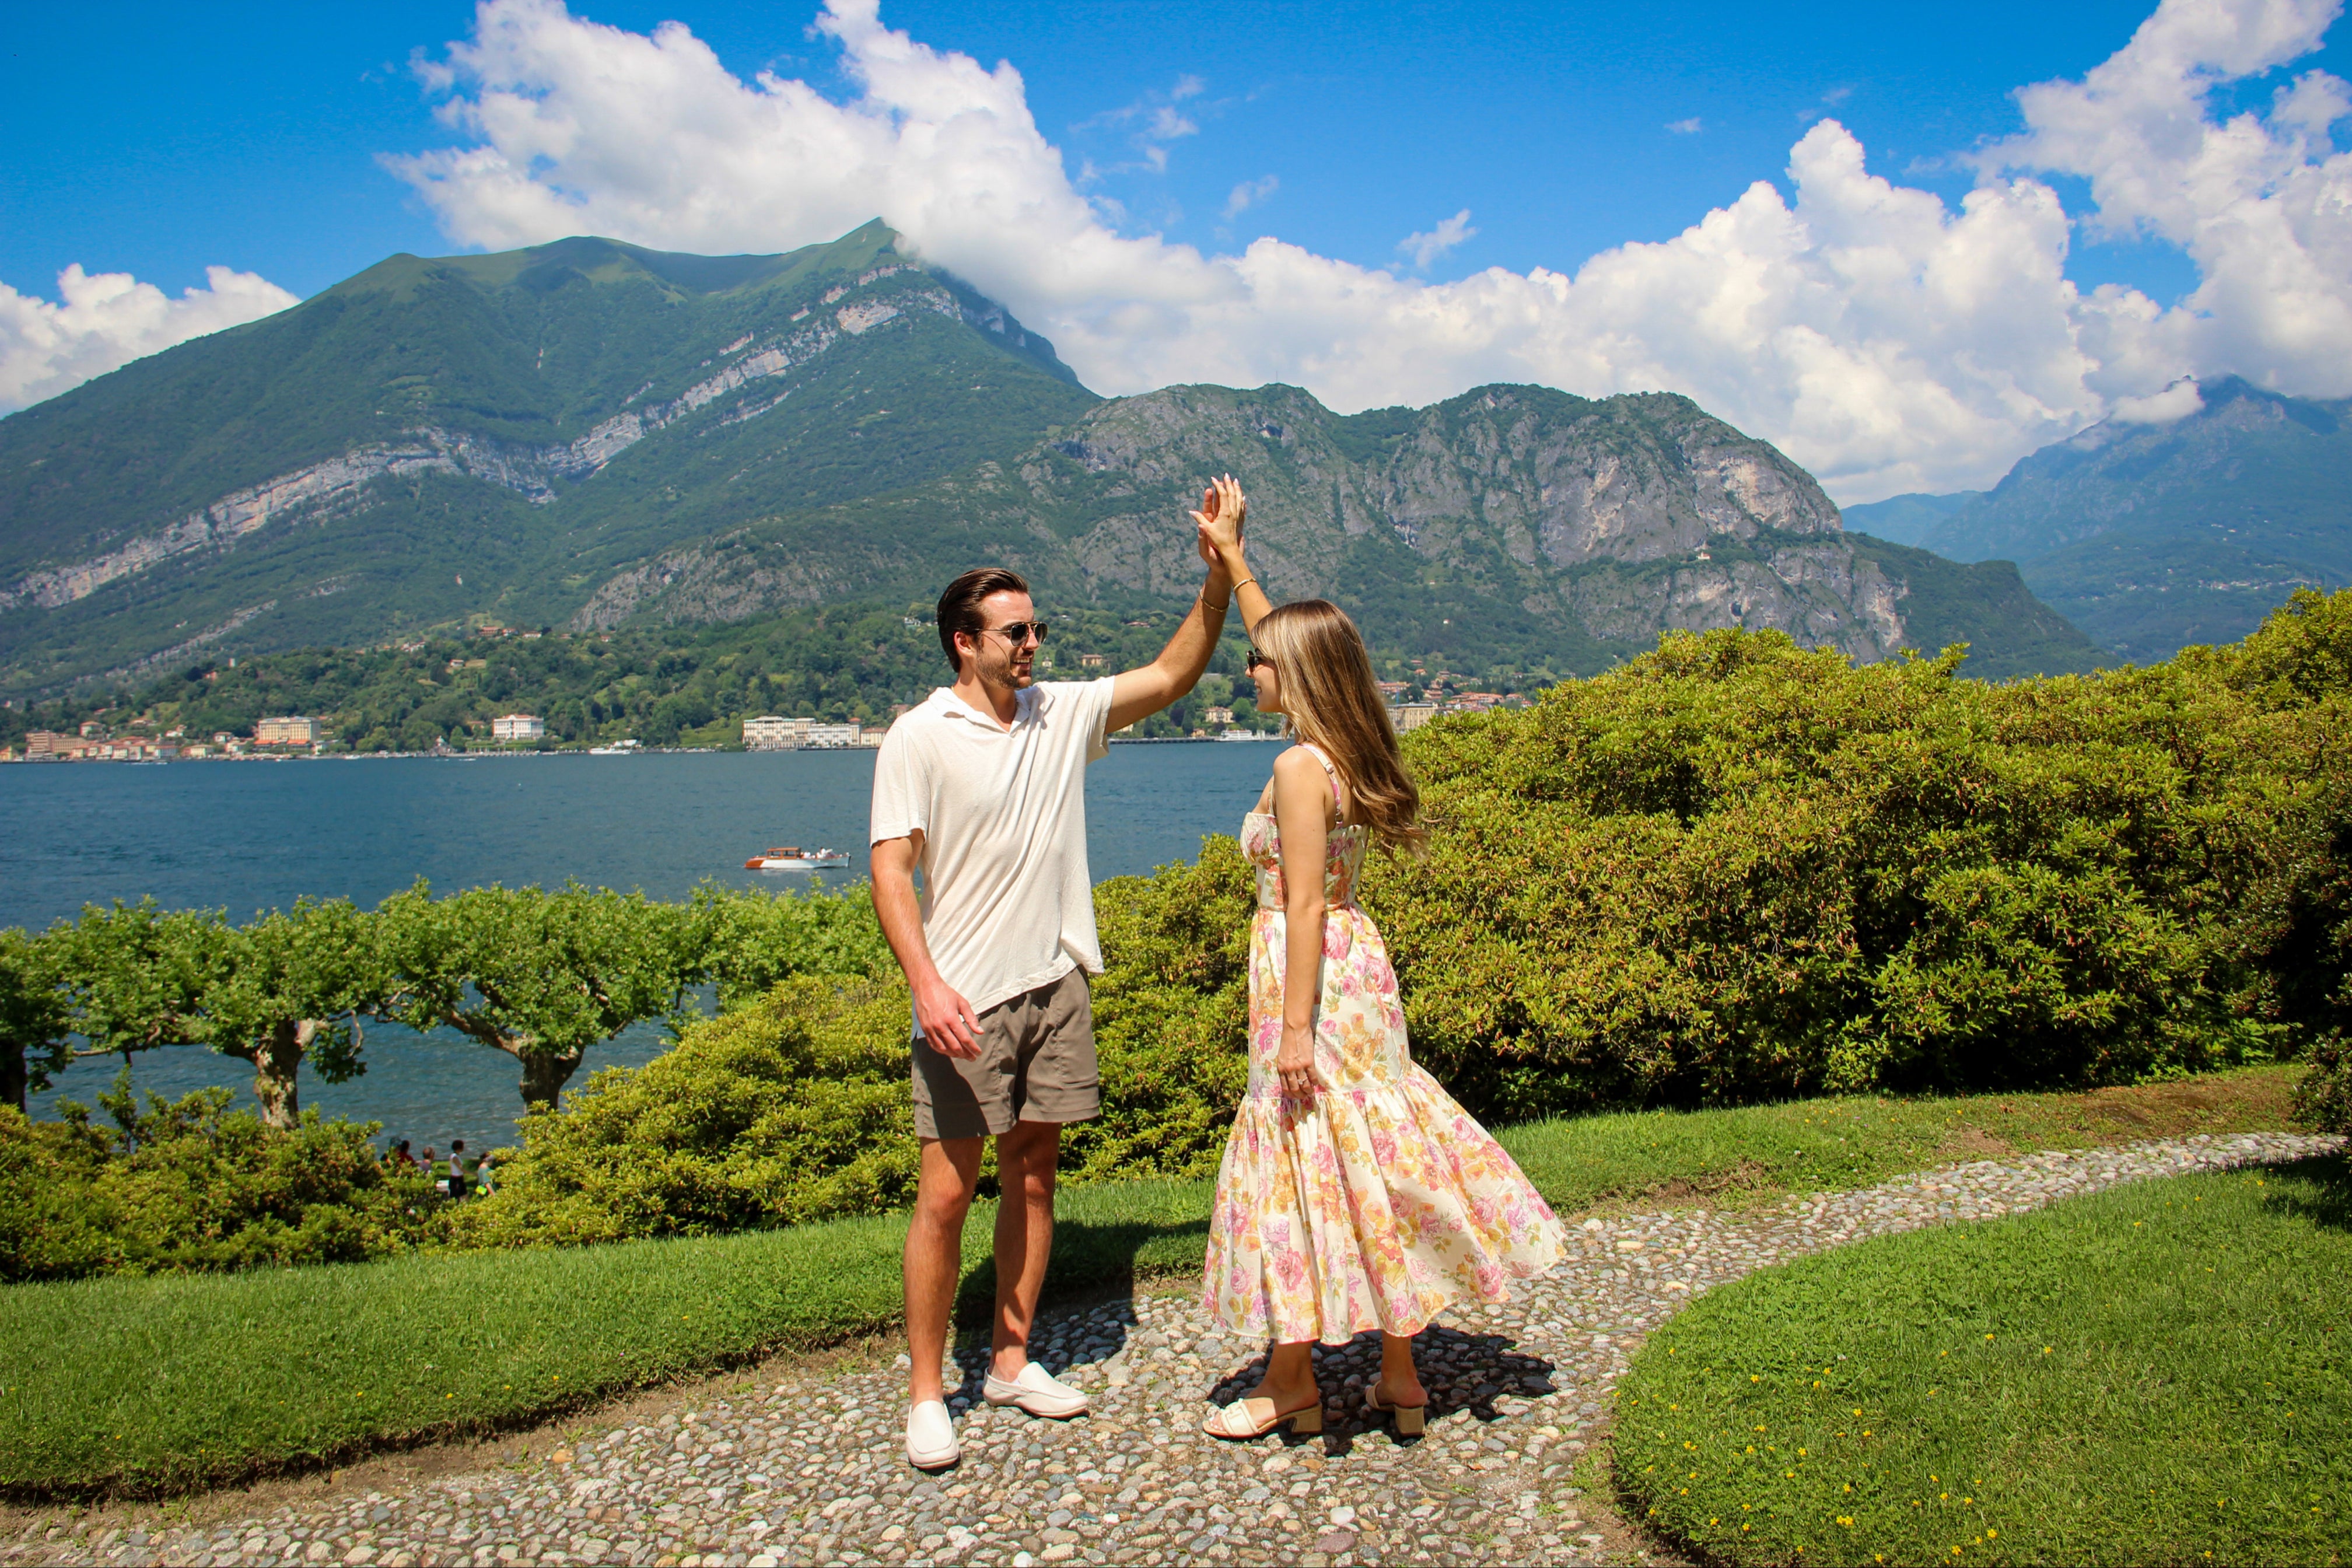 A Romantic Proposal at Villa Melzi in Bellagio | Lake Como